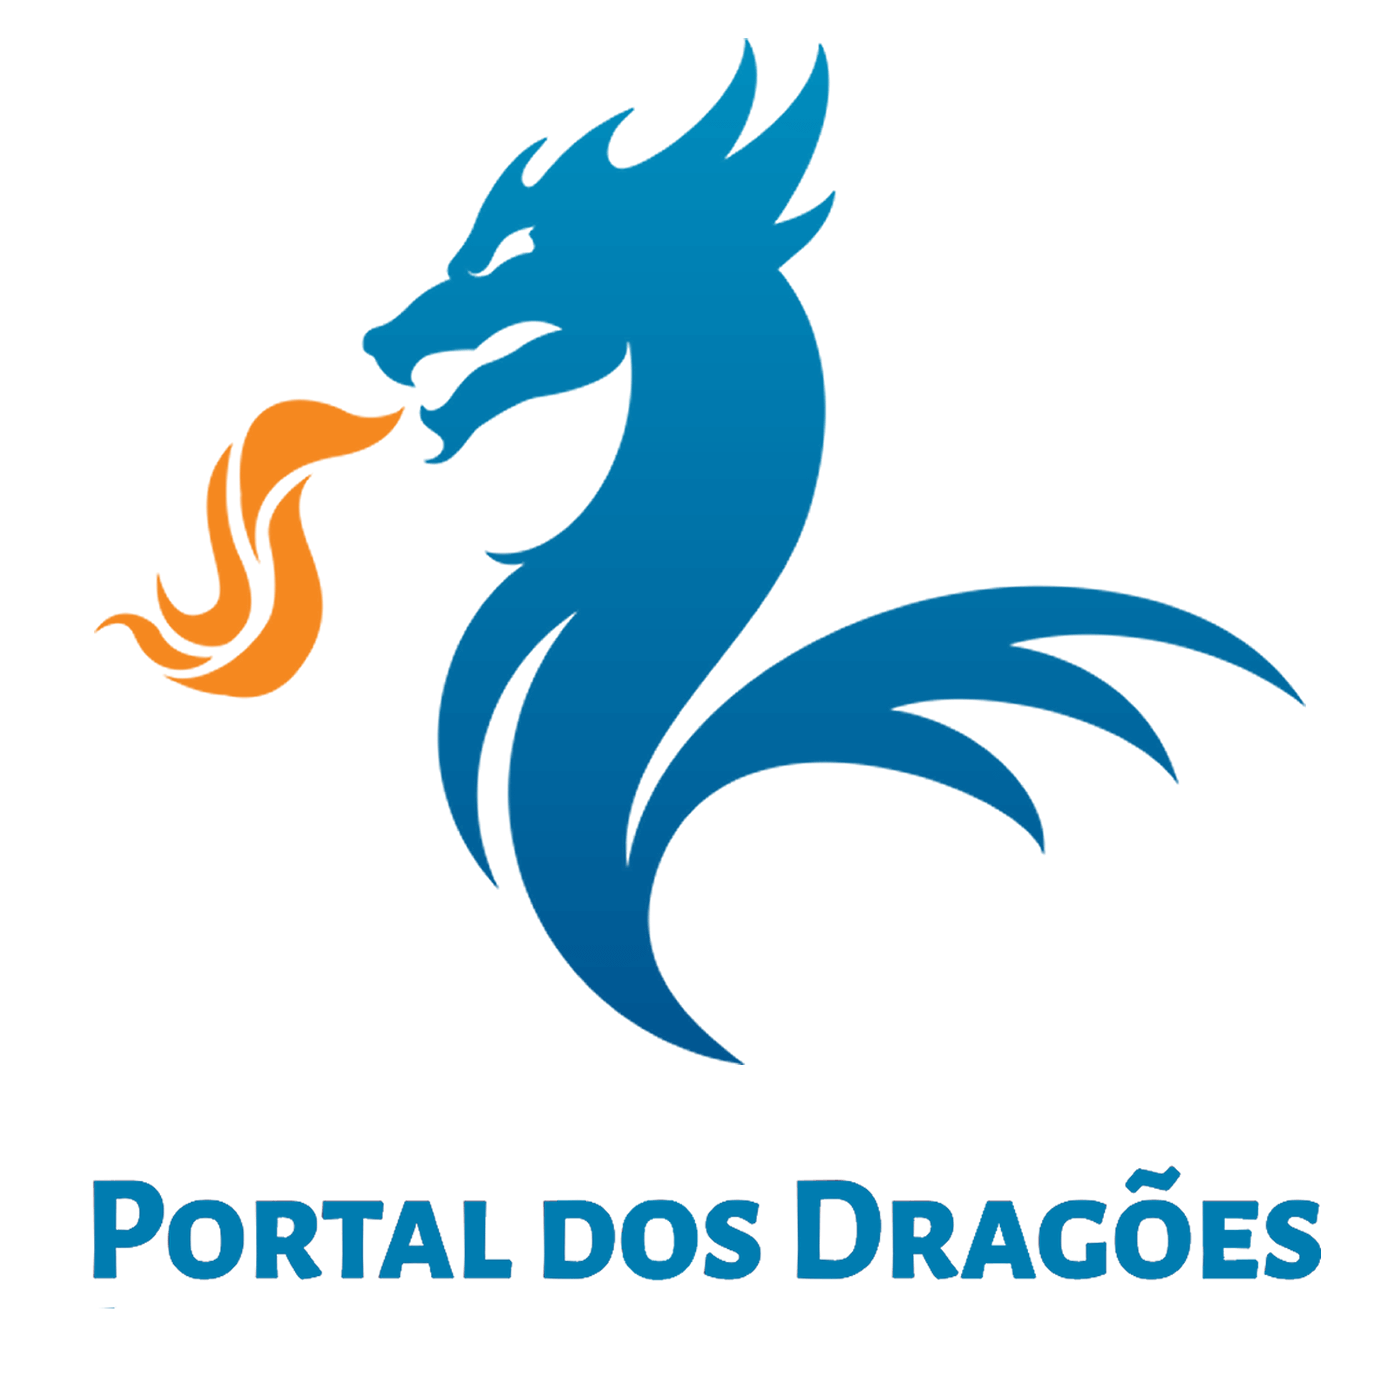 Portal dos Dragões